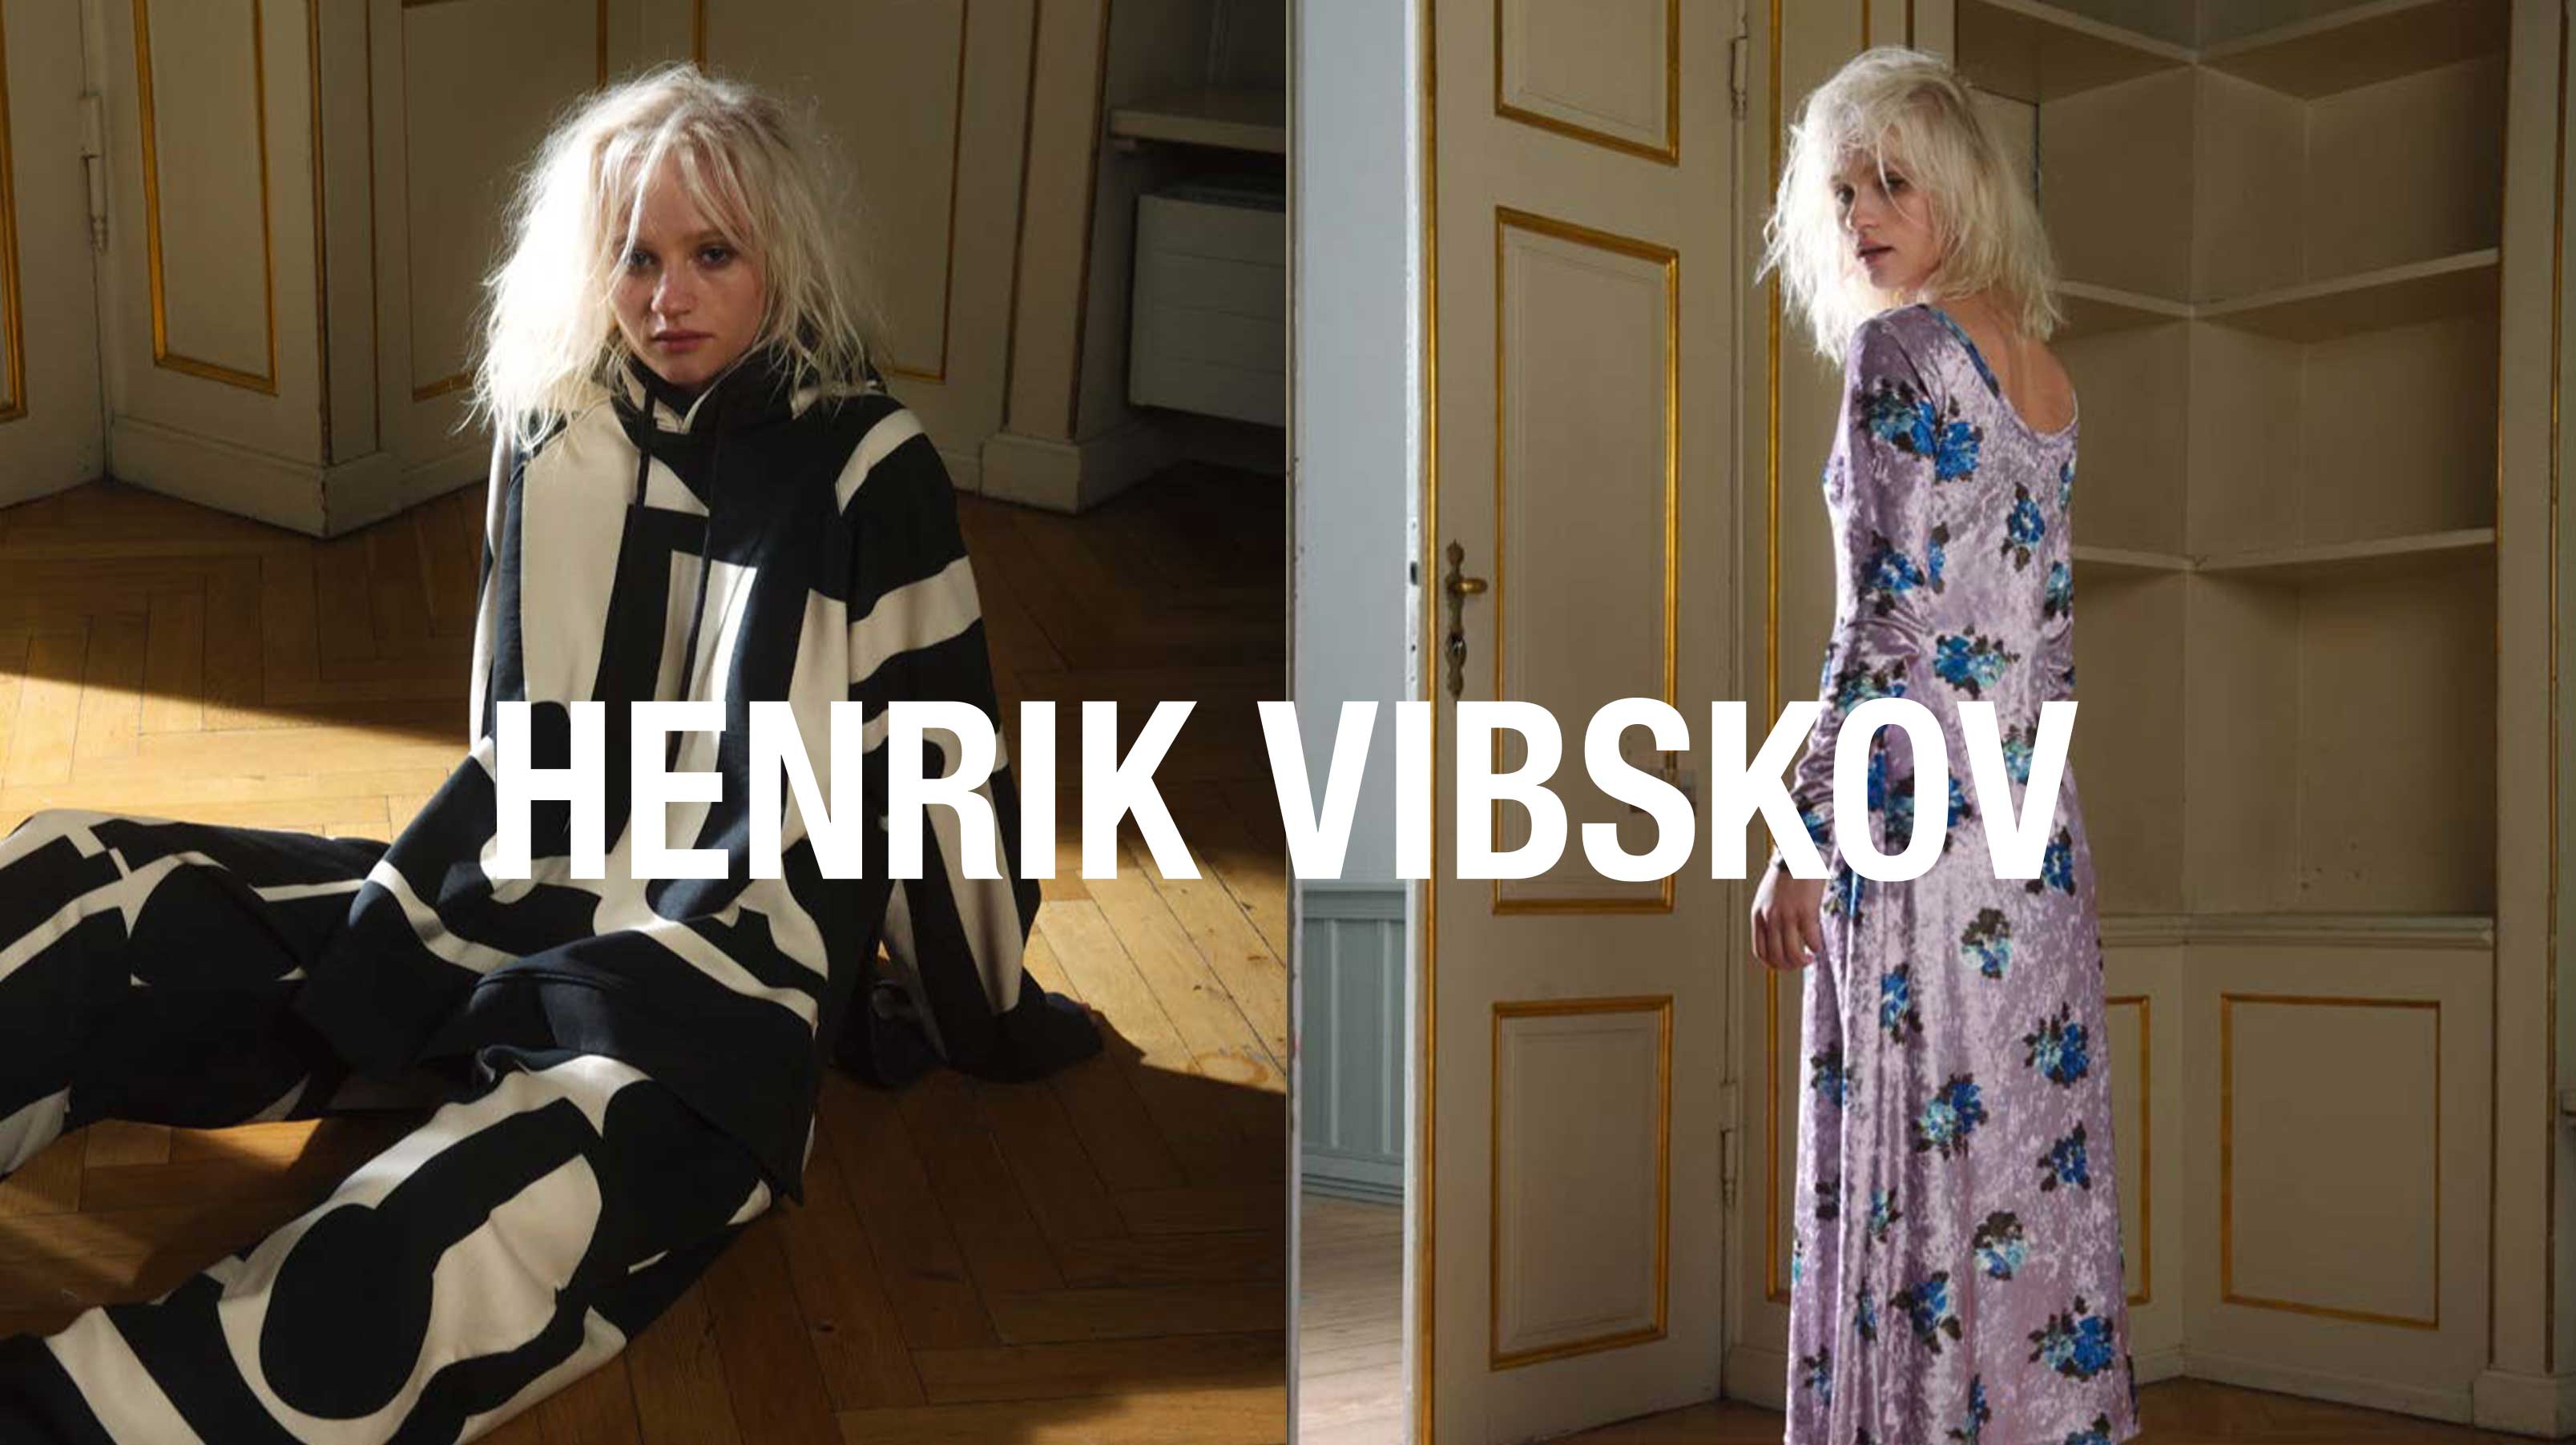 Henrik Vibskov - Independent Designer Fashion at LCD